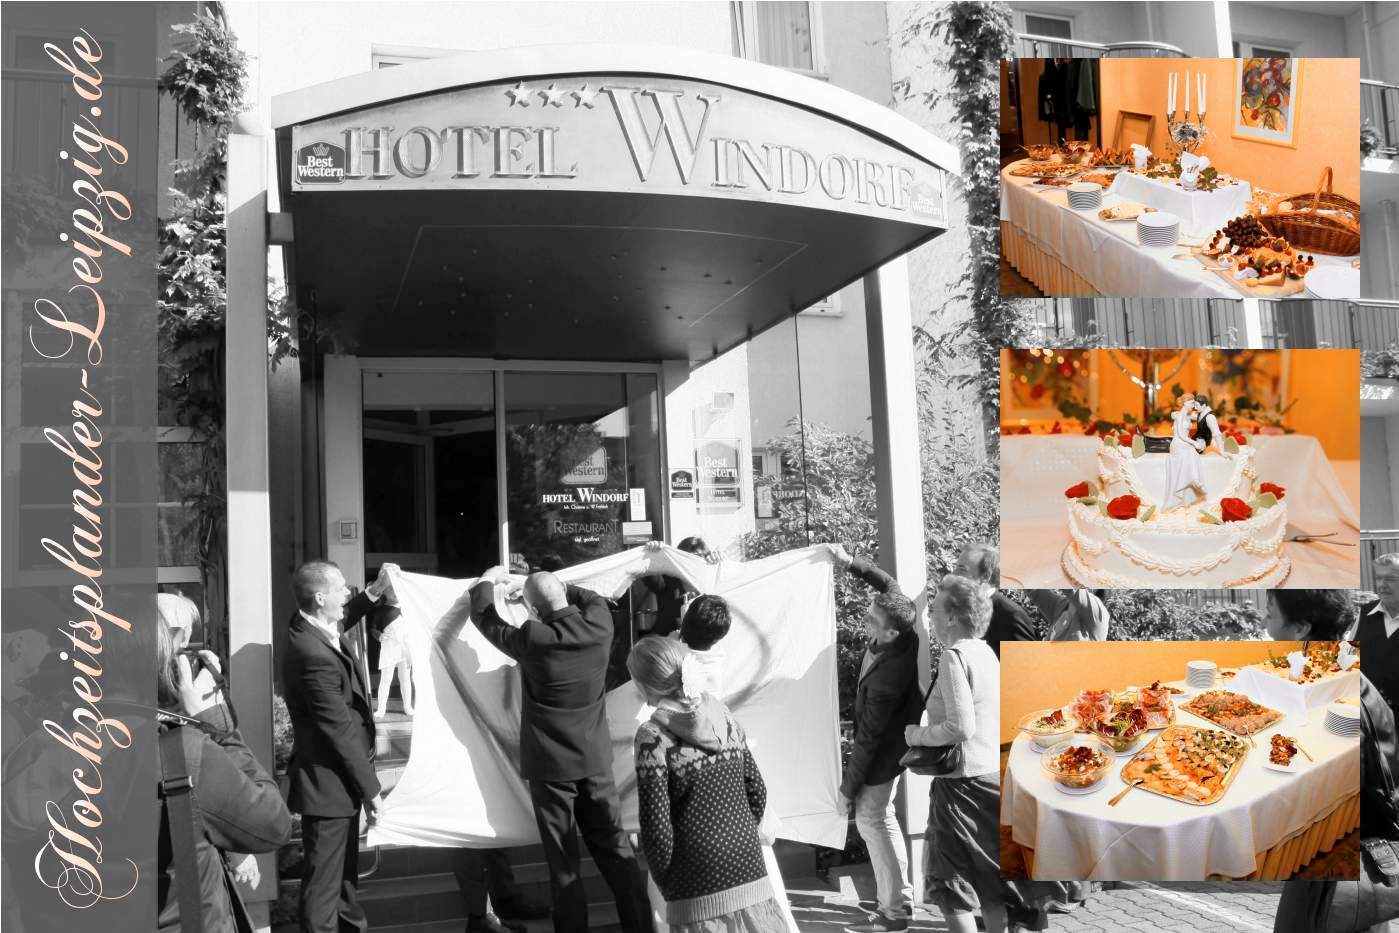 Hochzeitslocation Best Western Hotel Windorf Leipzig (Restaurant + Hotel für Hochzeitsfeier)